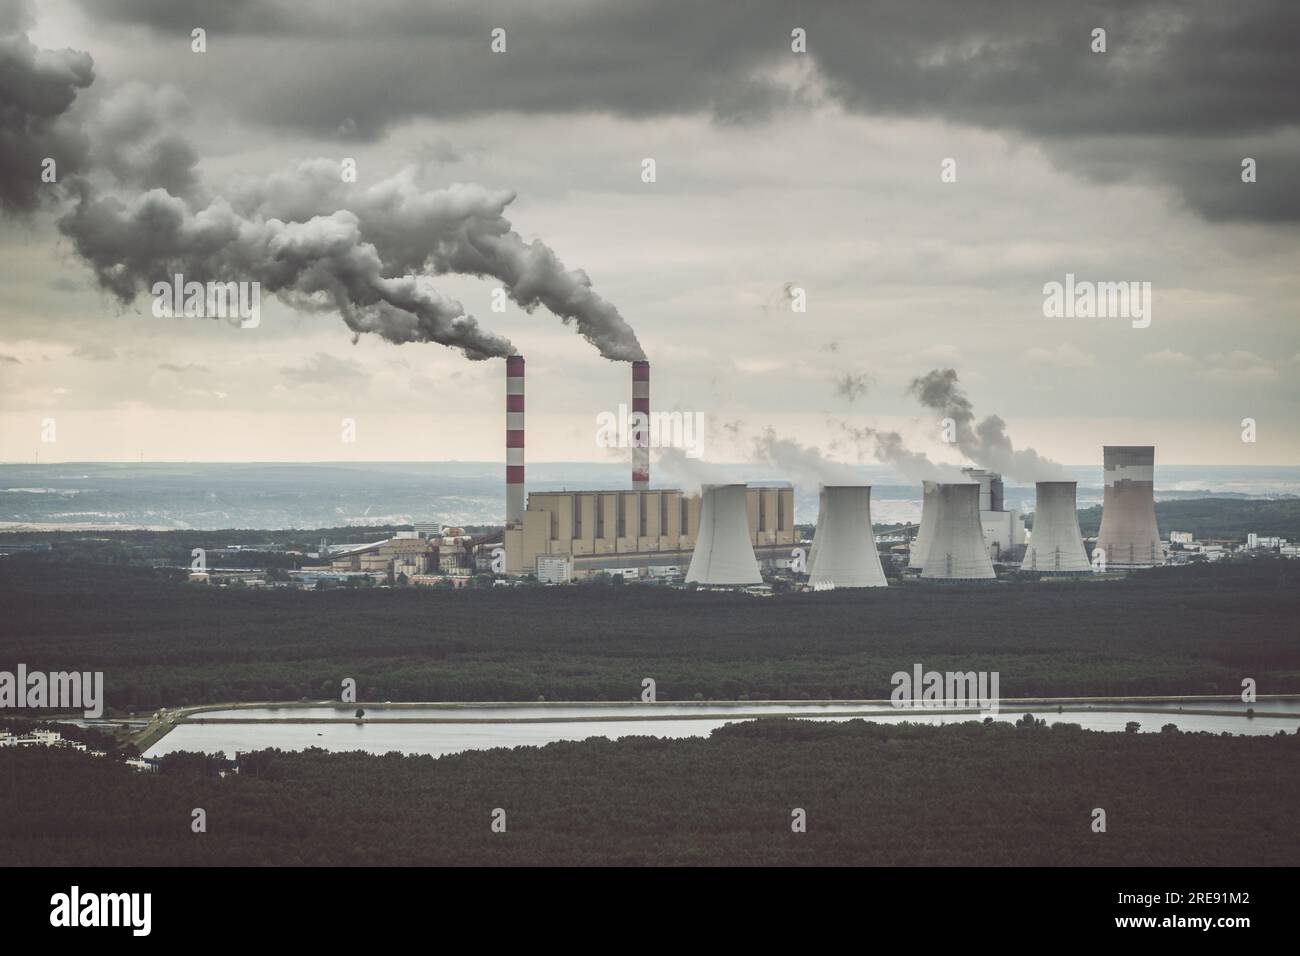 Vista aerea della centrale elettrica, fumo dai camini e miniera di carbone a cielo aperto a Belchatow sotto un cielo nuvoloso, Polonia Foto Stock